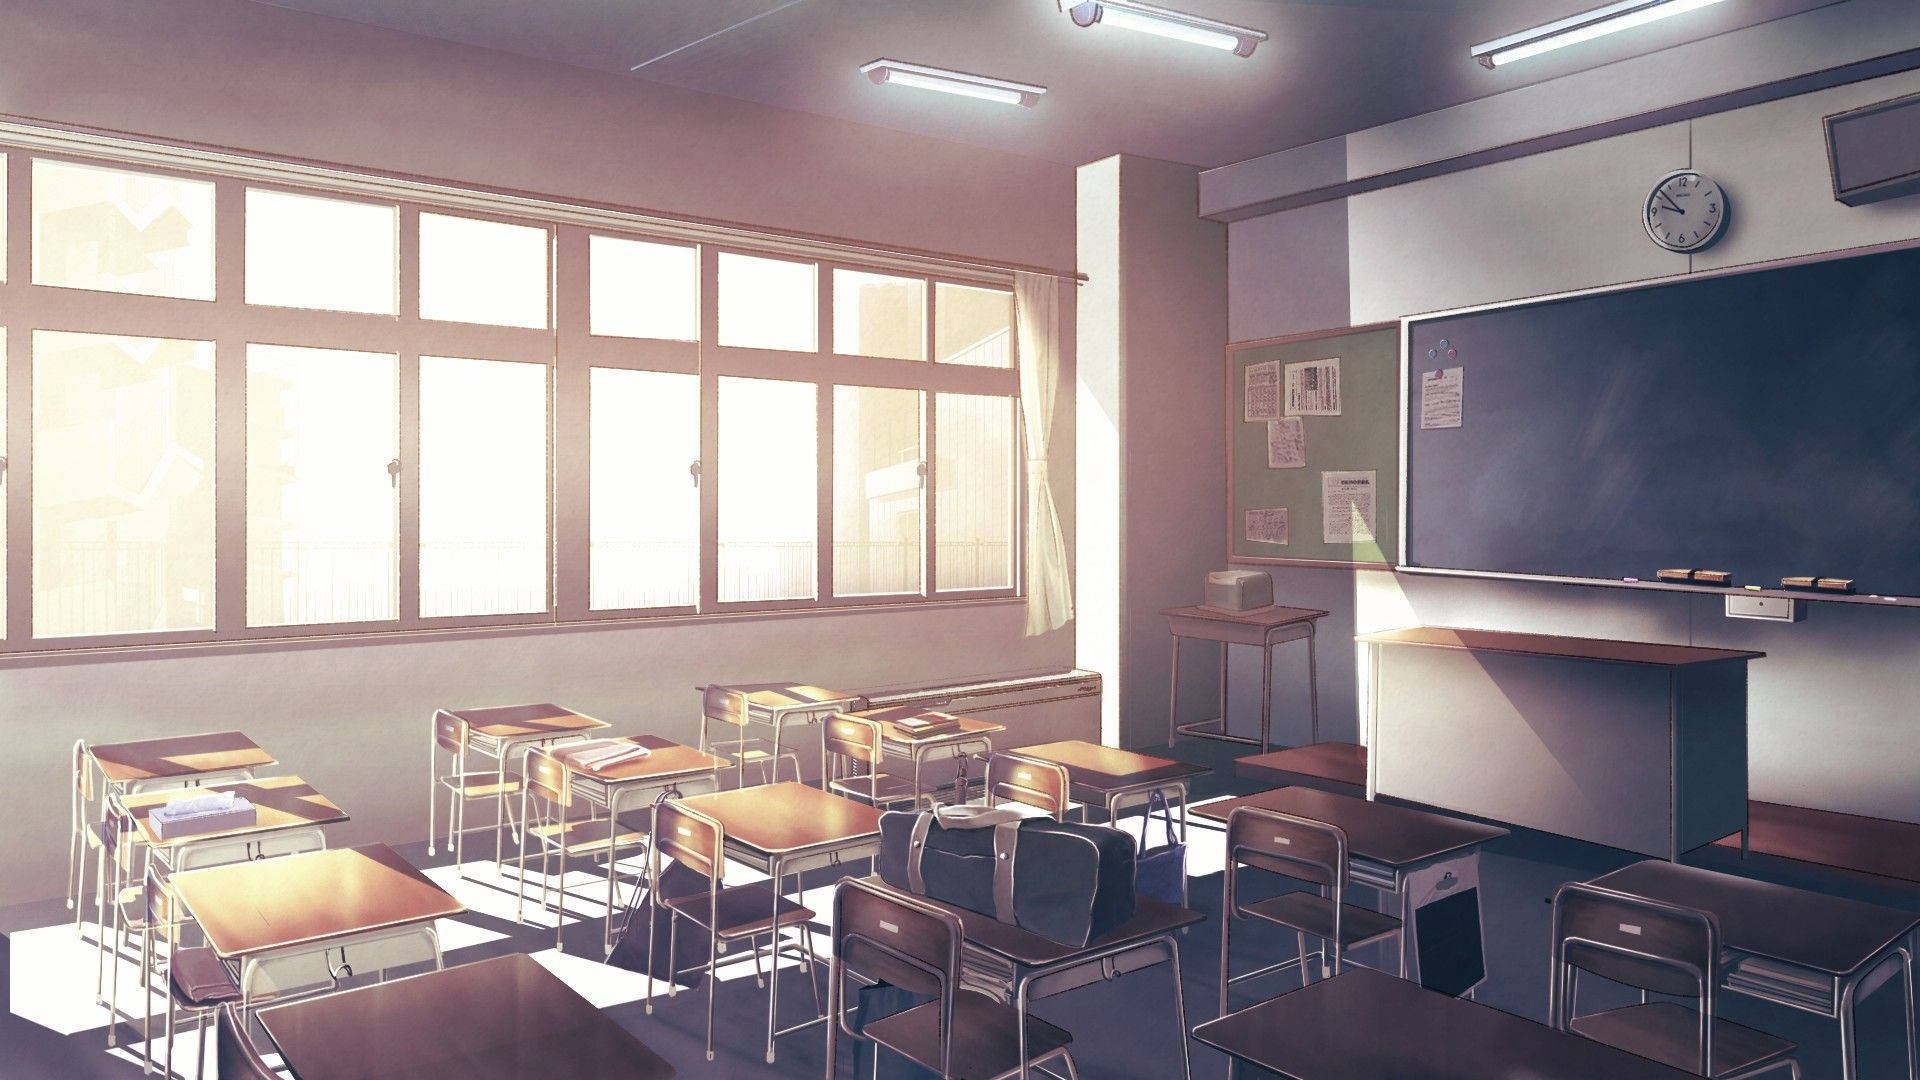 Animeklassenzimmer Mit Wunderschöner Beleuchtung Wallpaper